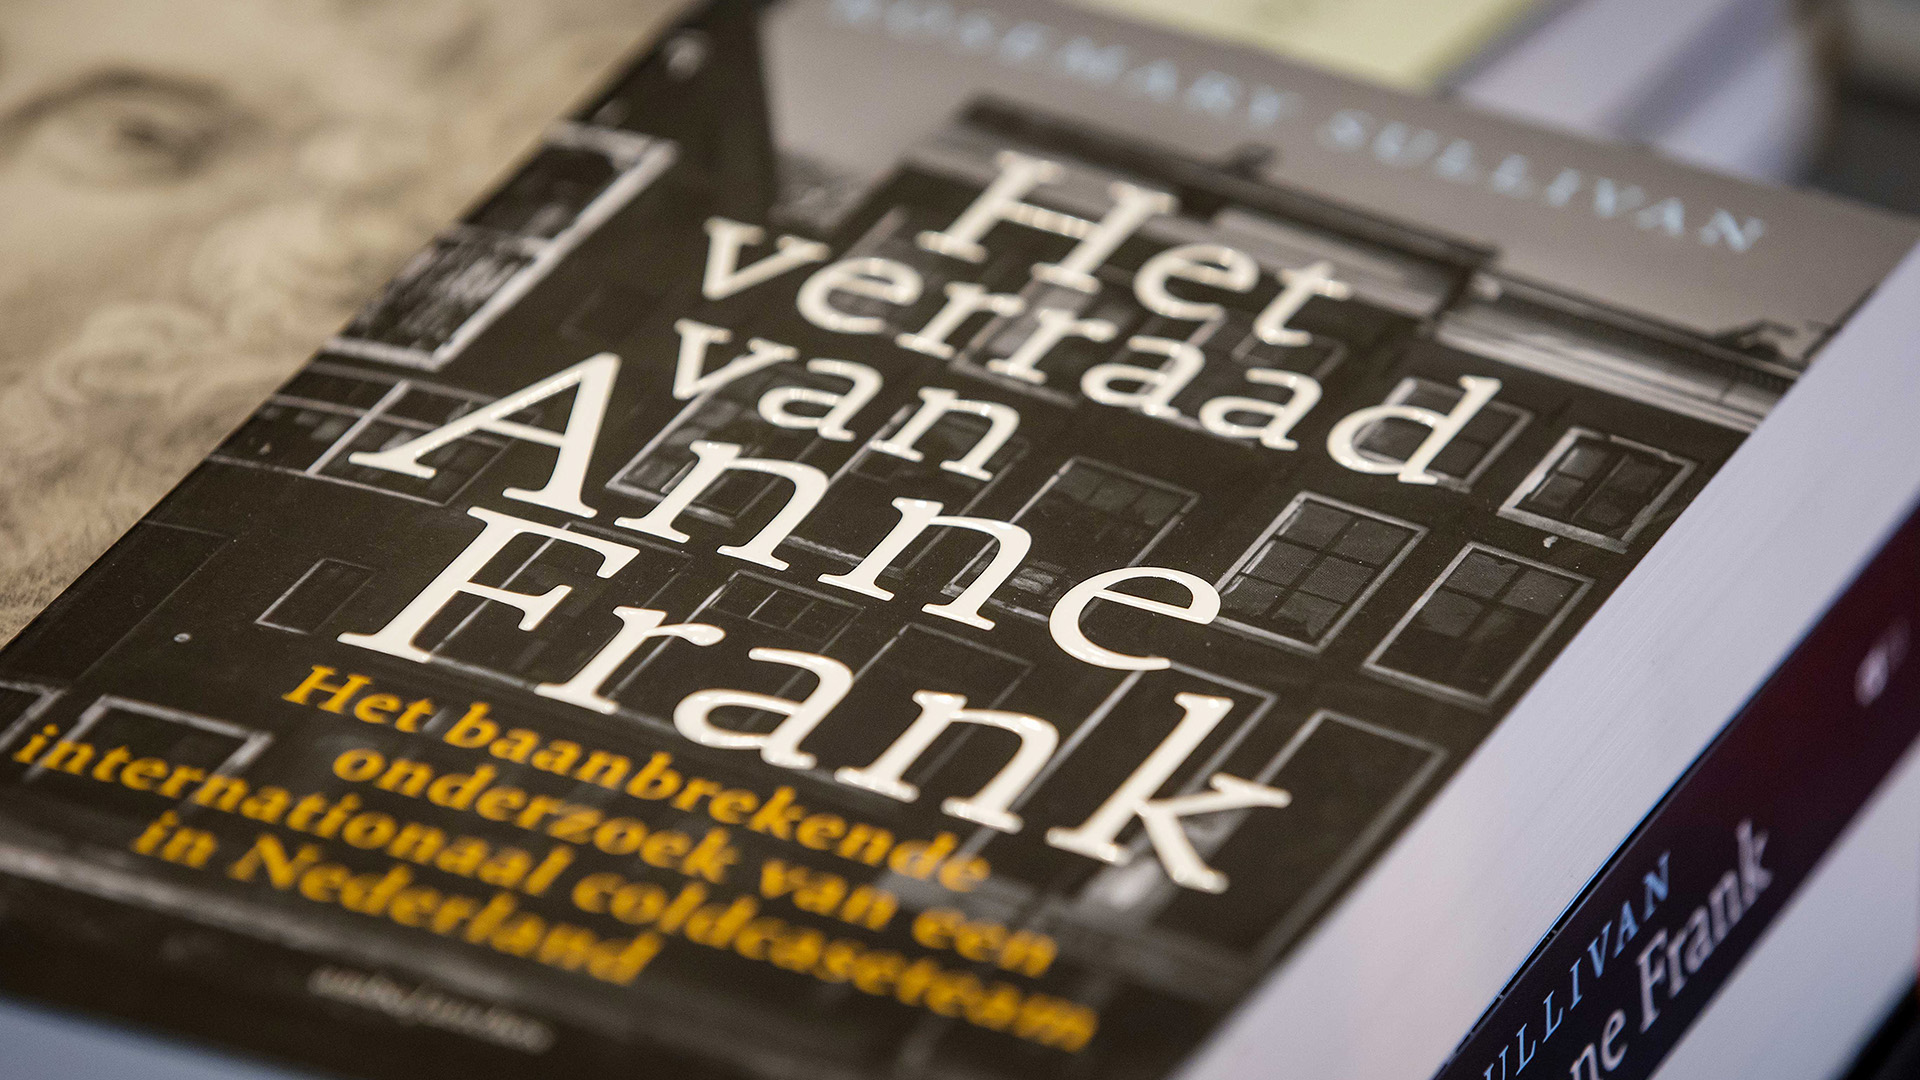 Das Buch "Het verraad van Anne Frank" liegt in einer Buchhandlung. | dpa